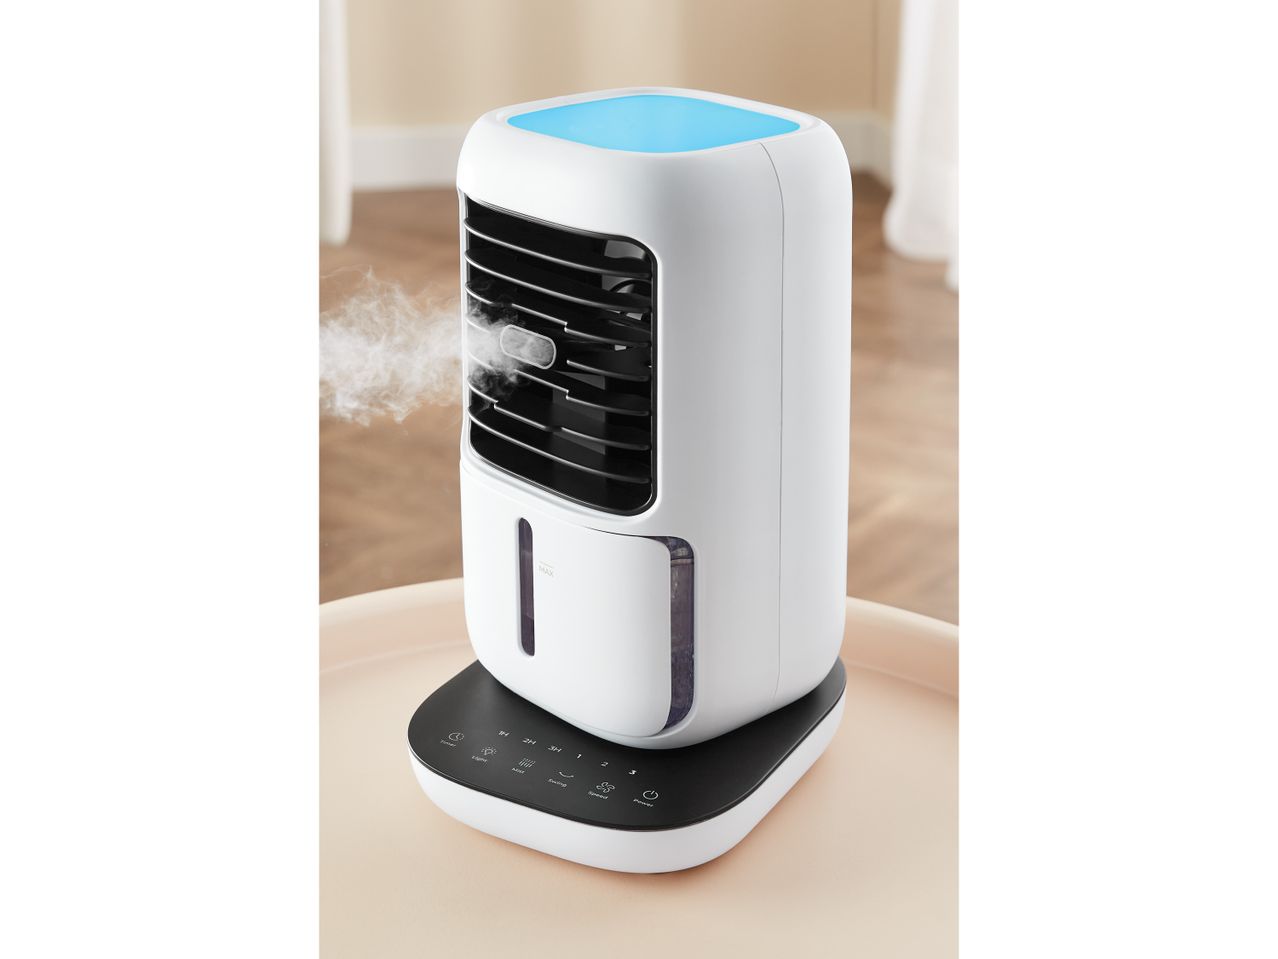 Mini refrigeratore ad aria con funzione , prezzo 34.99 EUR 
Mini refrigeratore ad ...